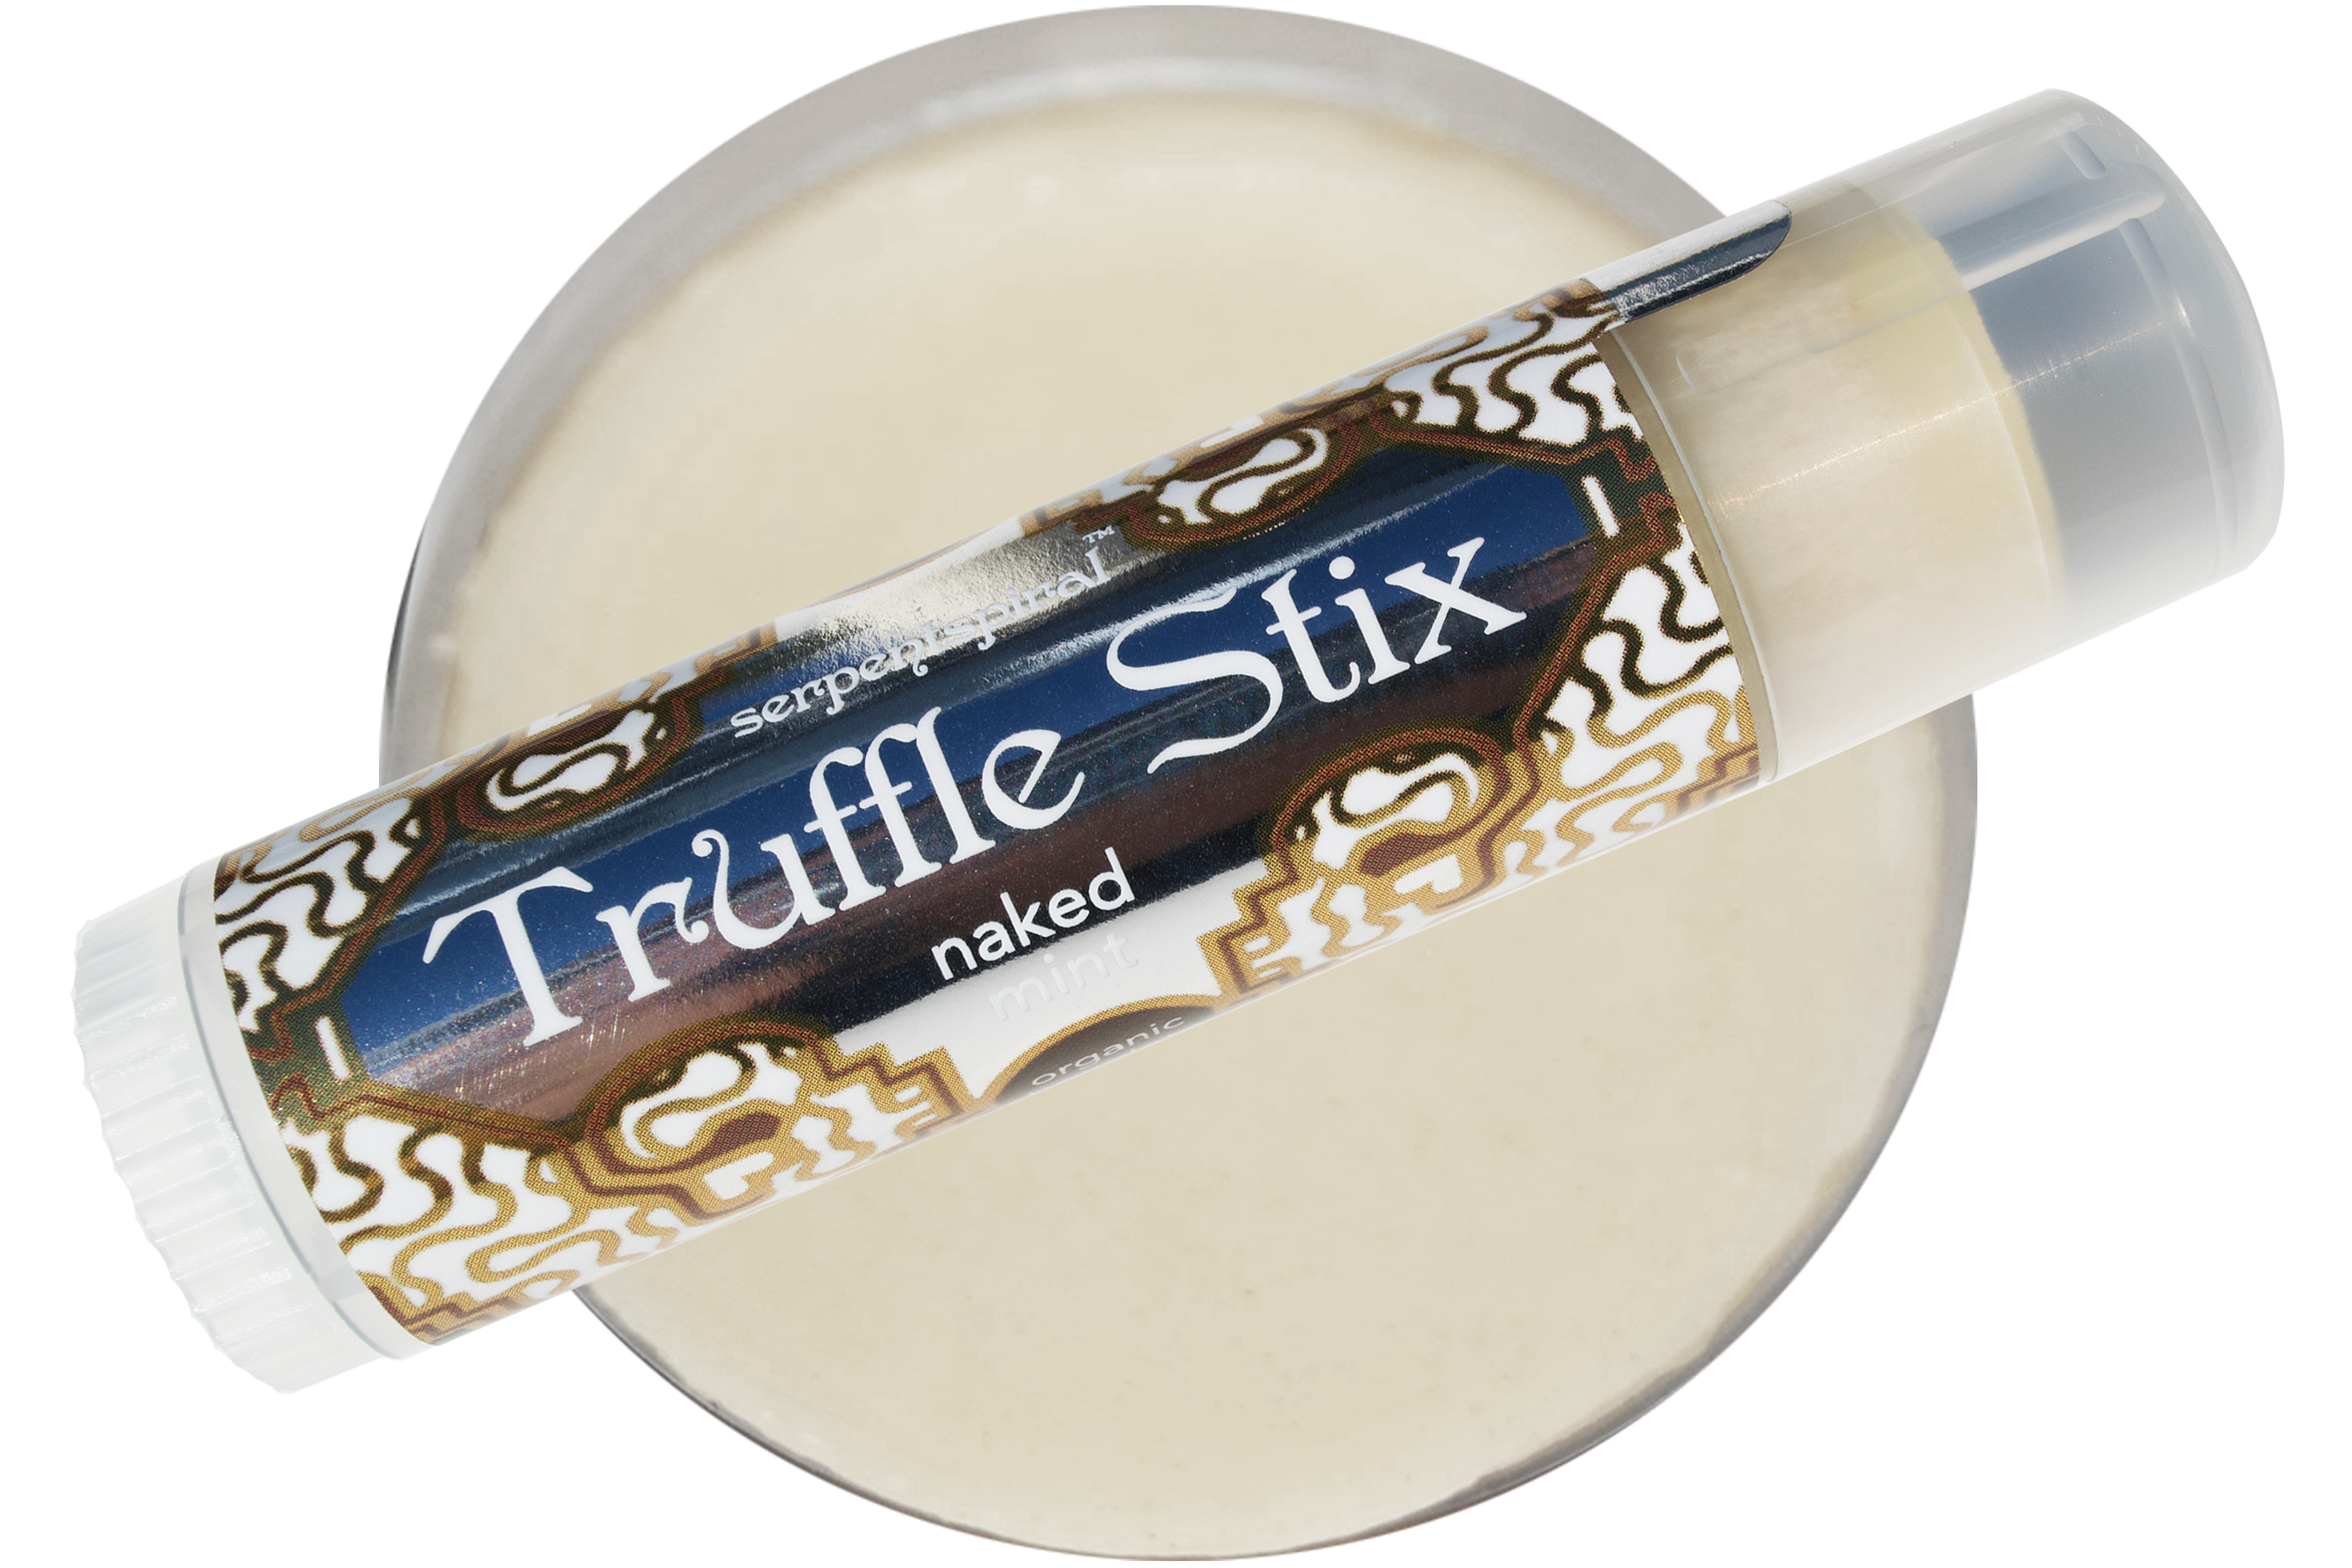 Truffle Stix ~ naked mint organic luxury chocolate lip balm